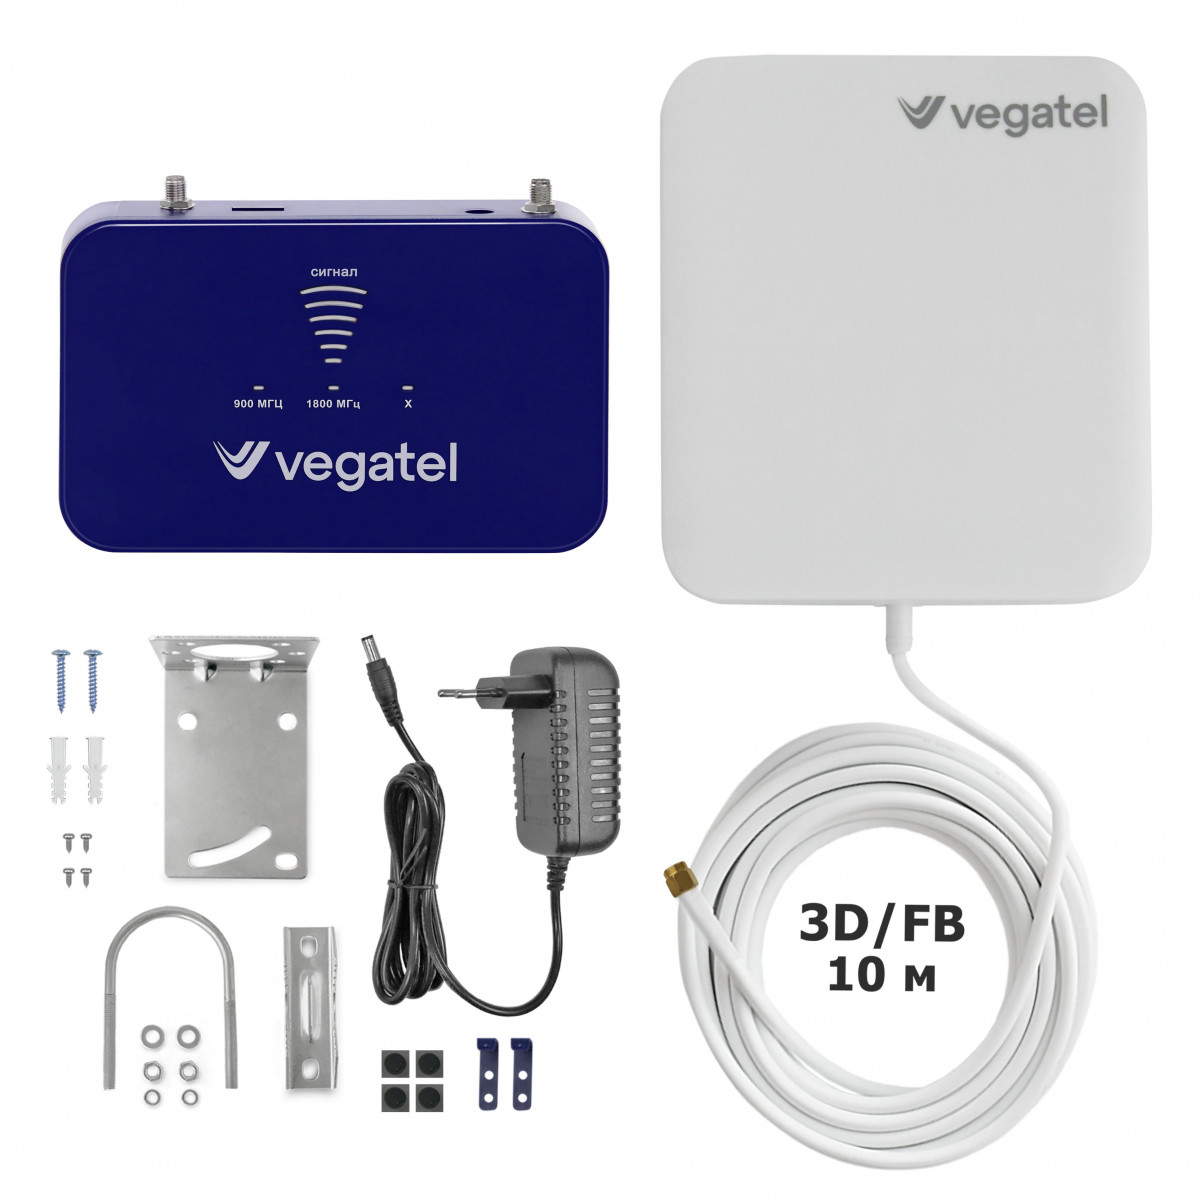 Детальное изображение товара "Комплект усиления сотовой связи Vegatel PL-900/1800" из каталога оборудования Антенна76